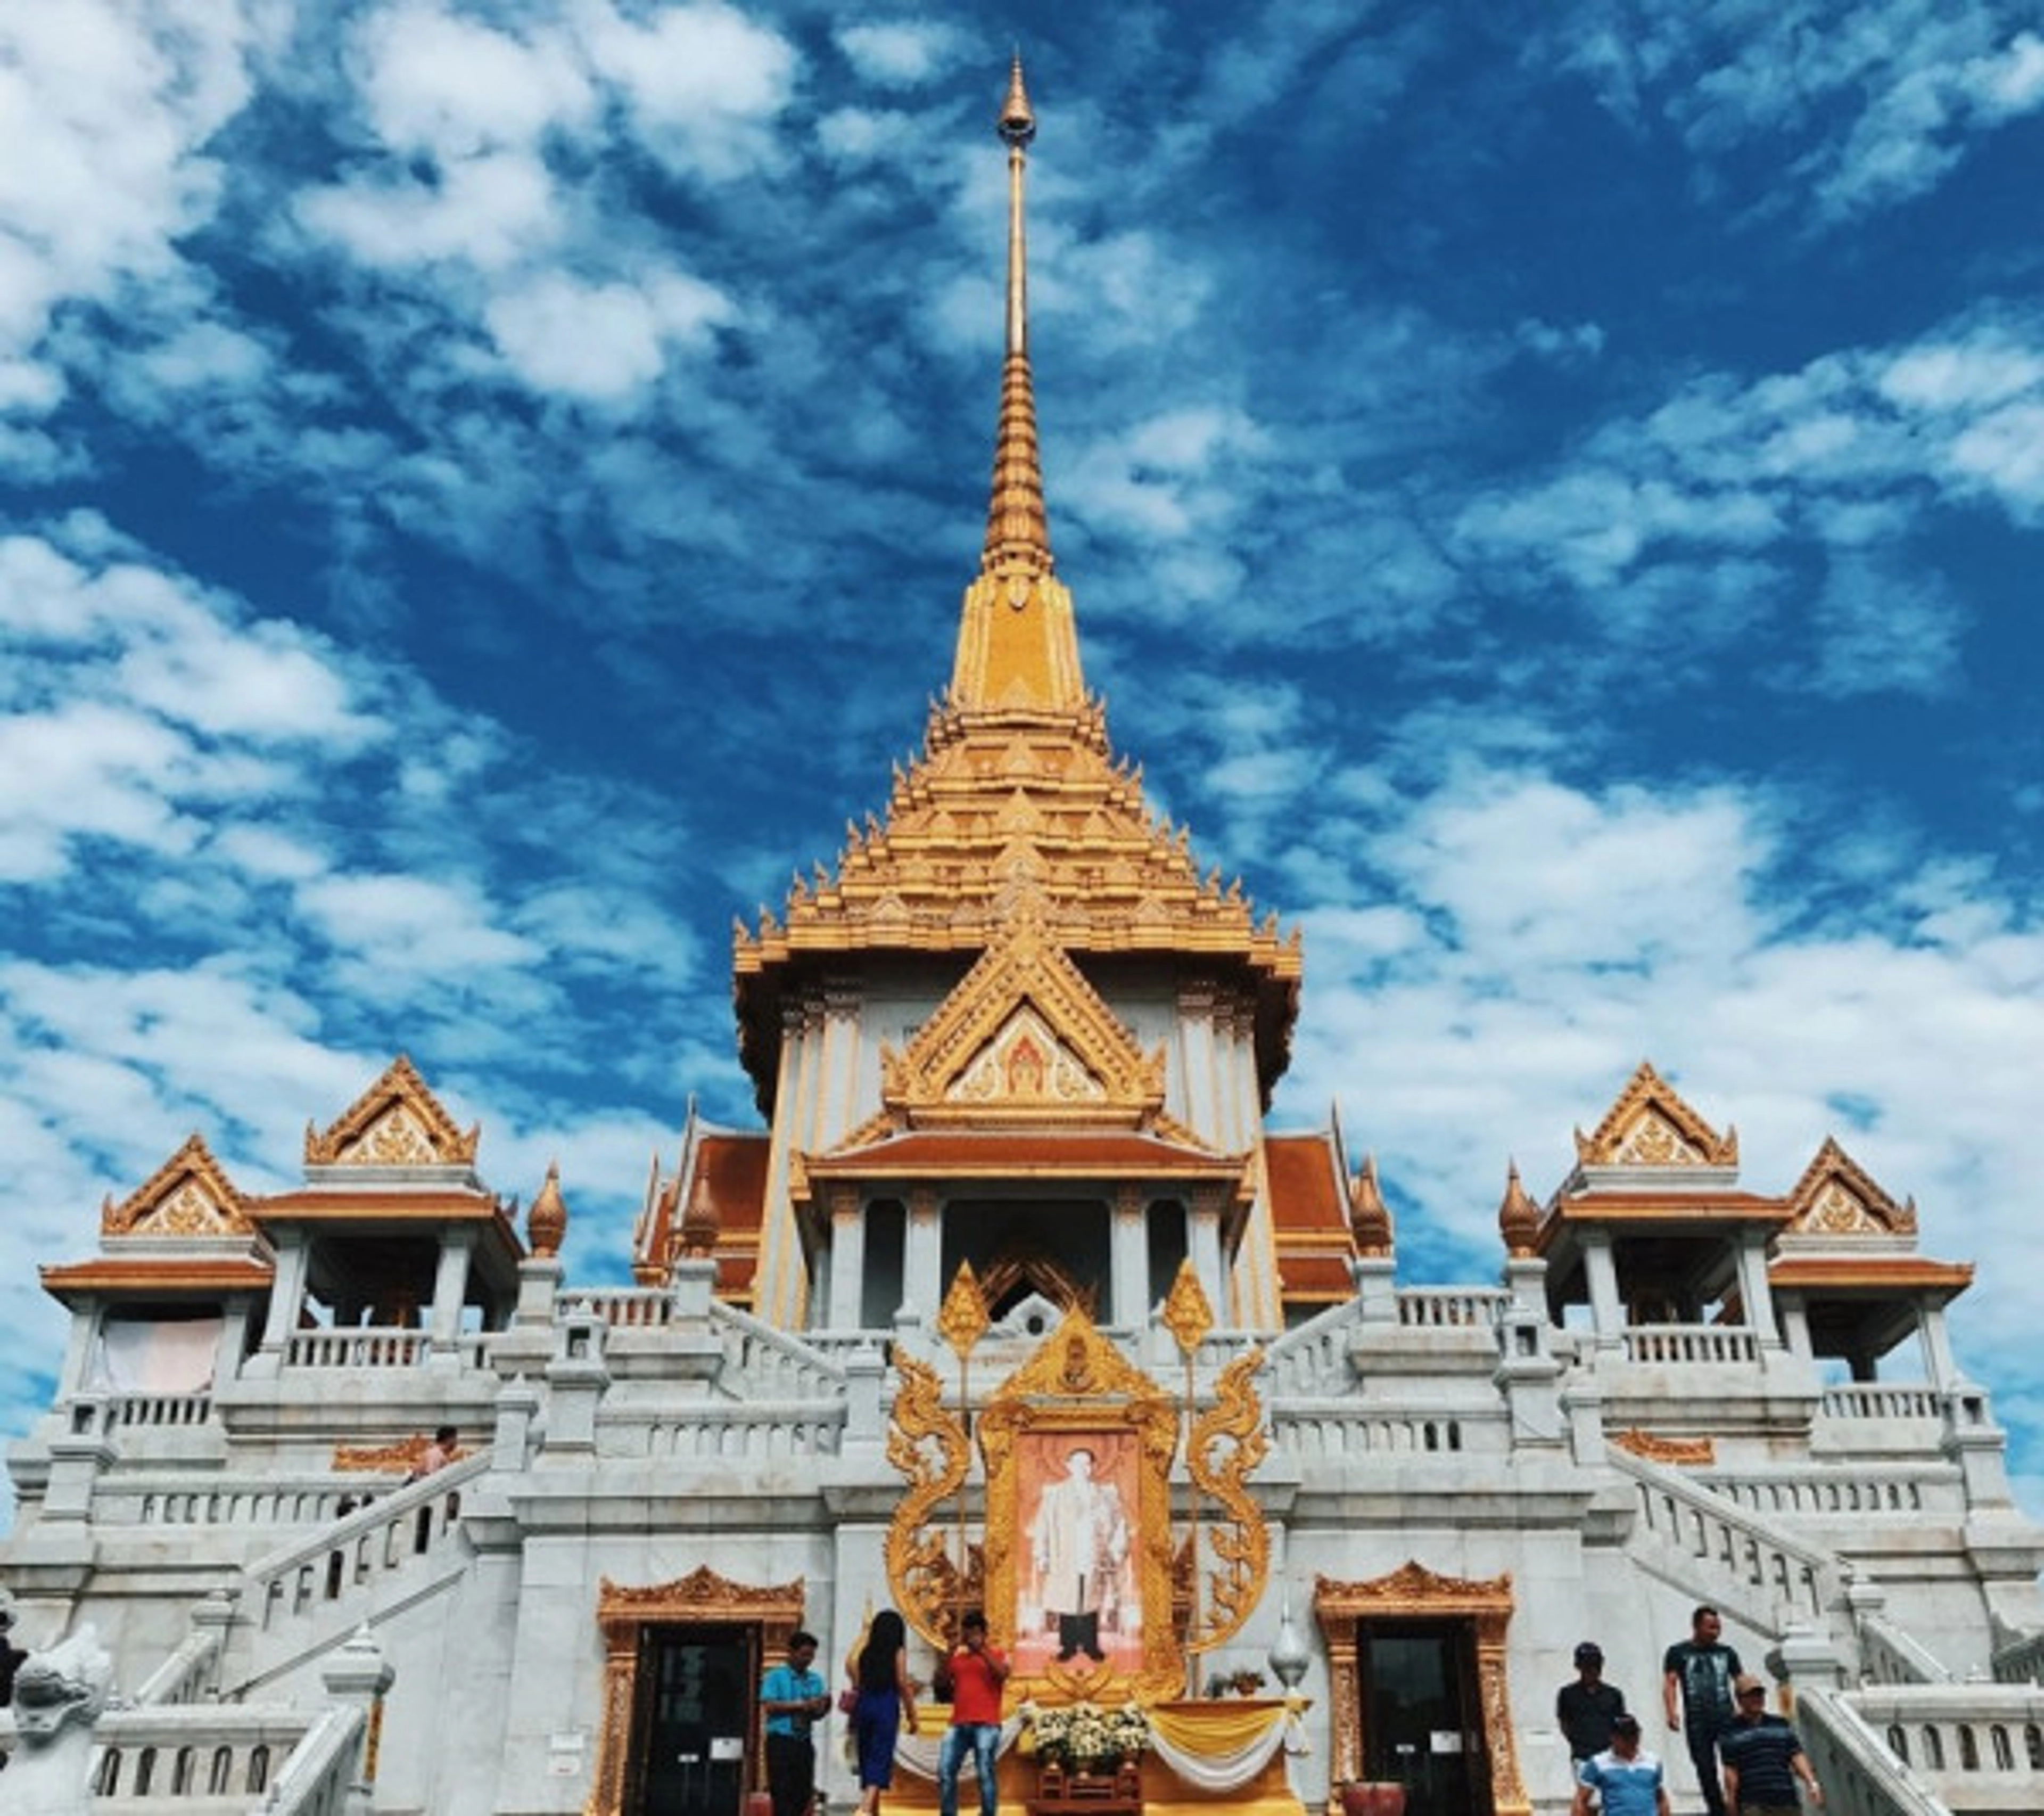 Khám phá ngôi chùa khang trang mang tính lịch sử tại Thái Lan